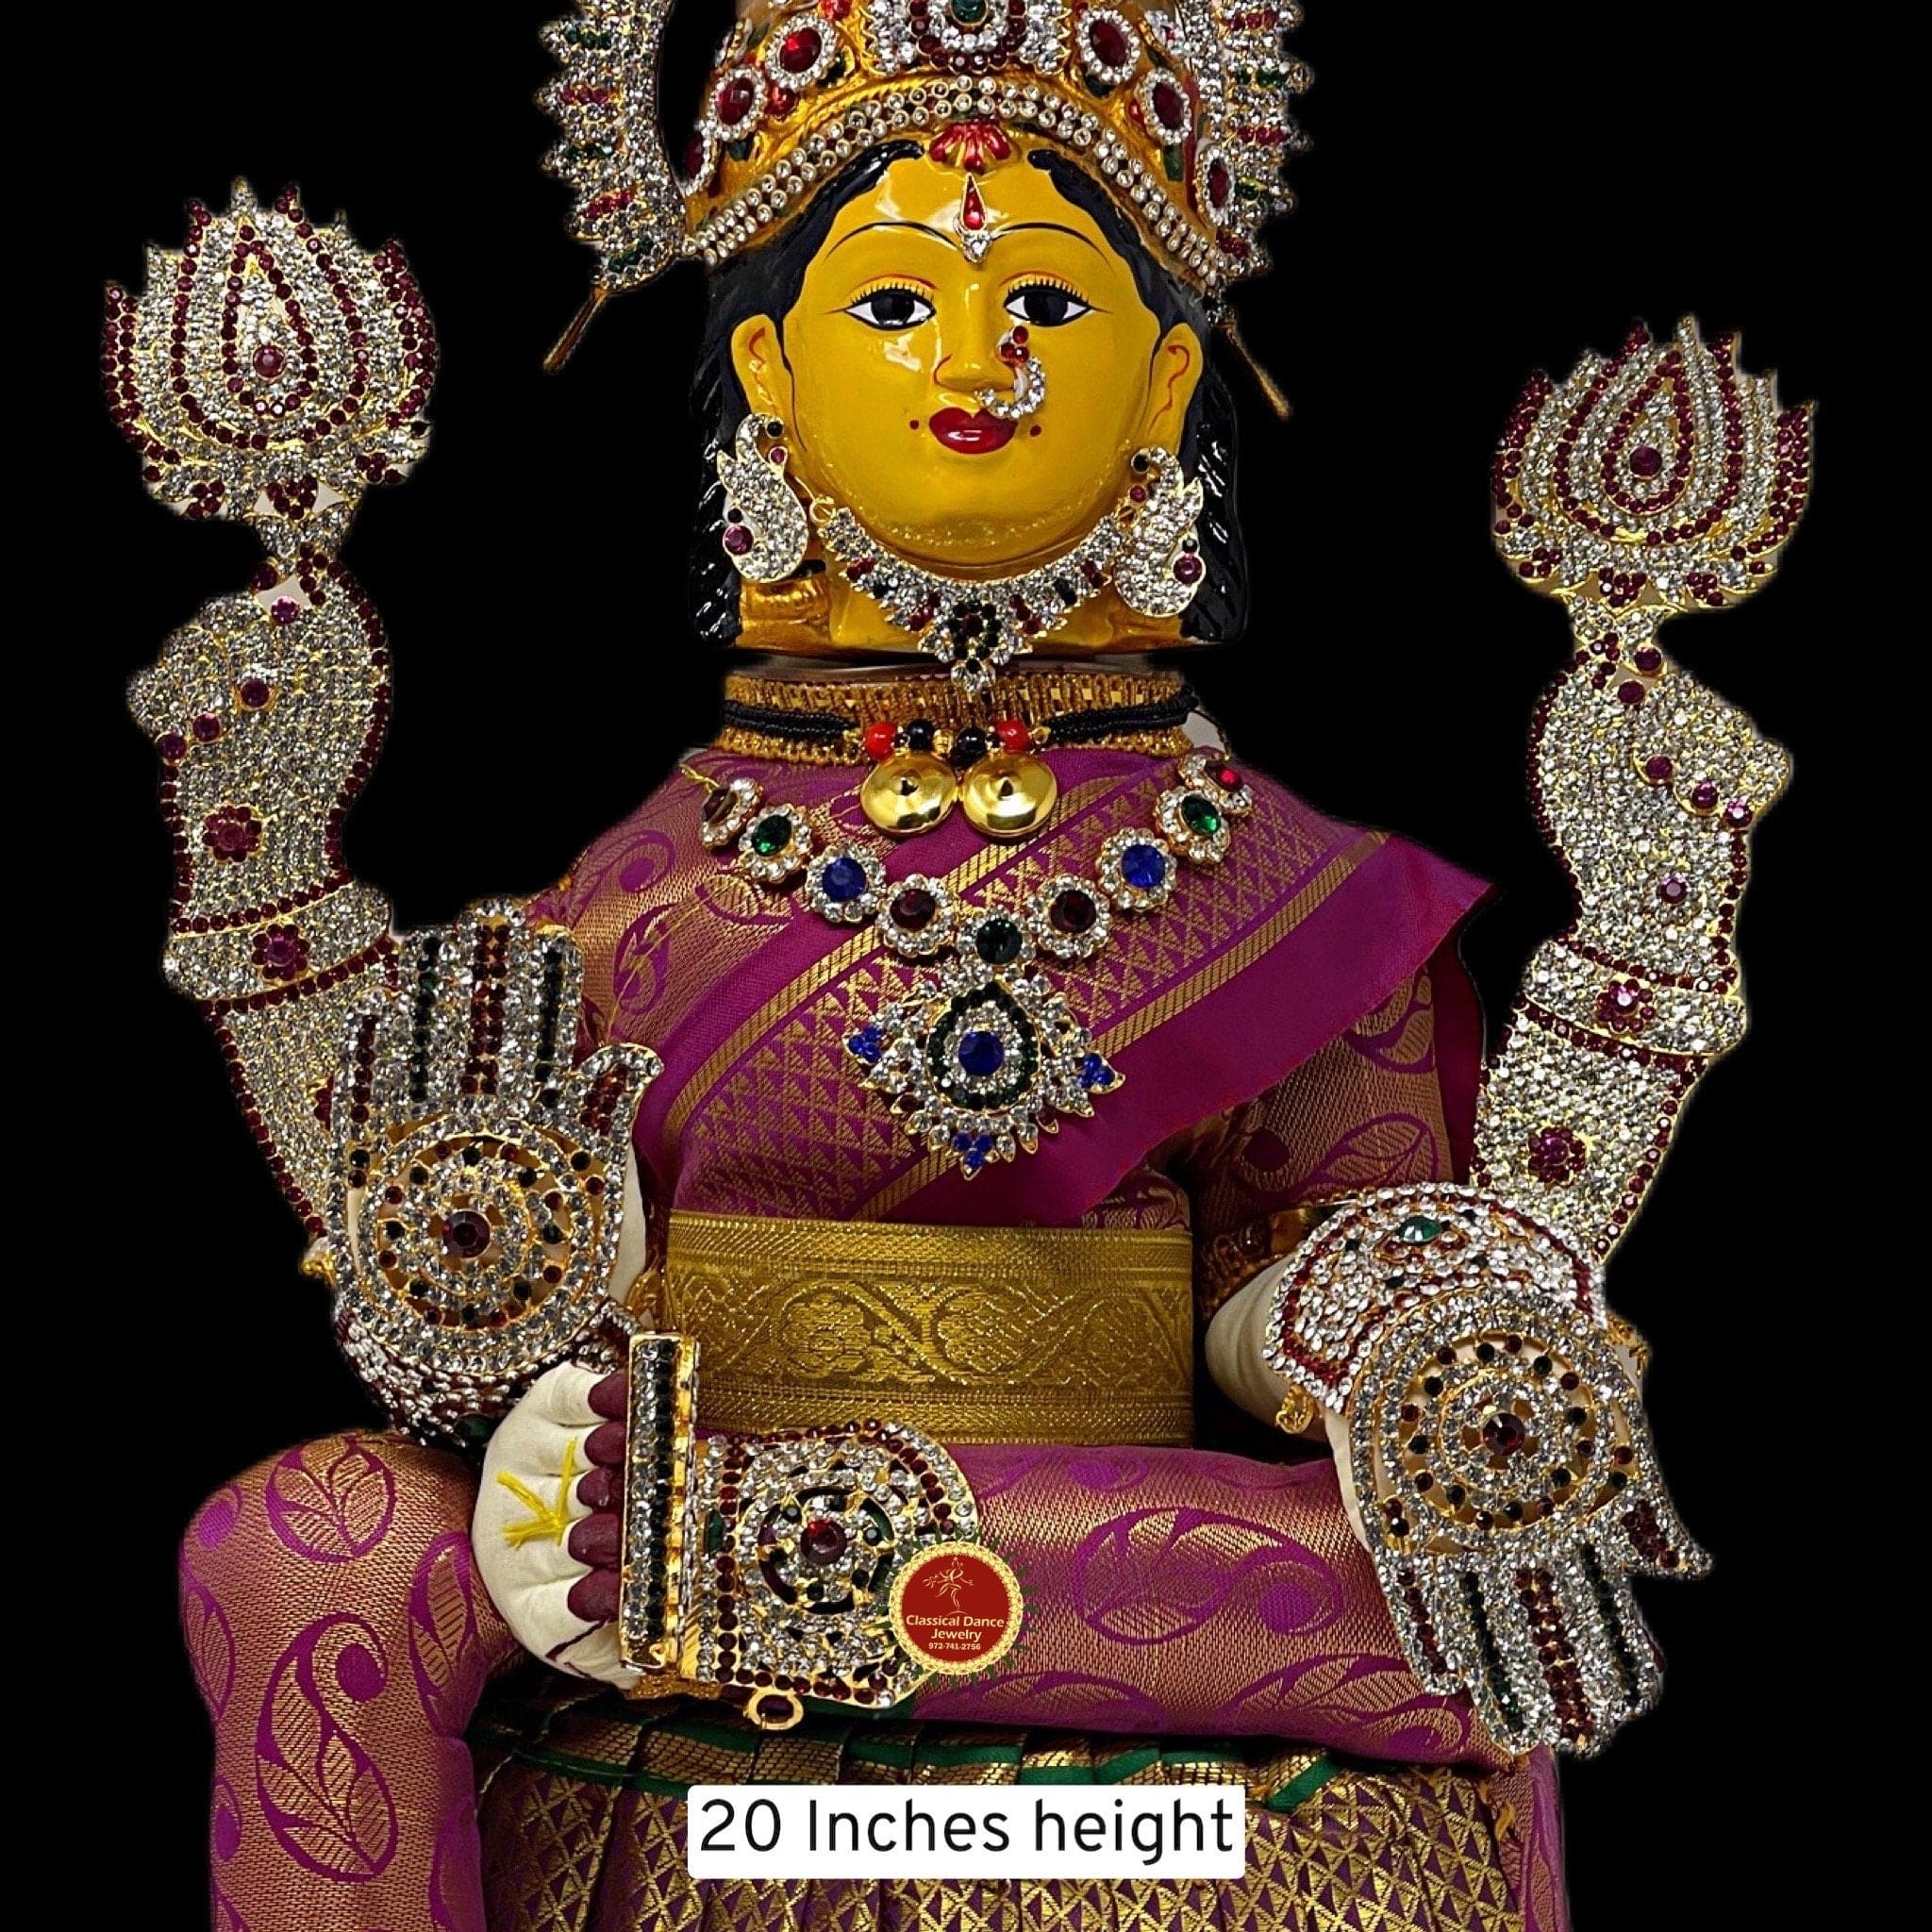 S964898 – Panchalogam Valampuri Vinayagar Ring Panchaloha Right Trunk  Ganesh Ring (5 Metals Panchadhatu Ring) 5grams - Season Bazaar